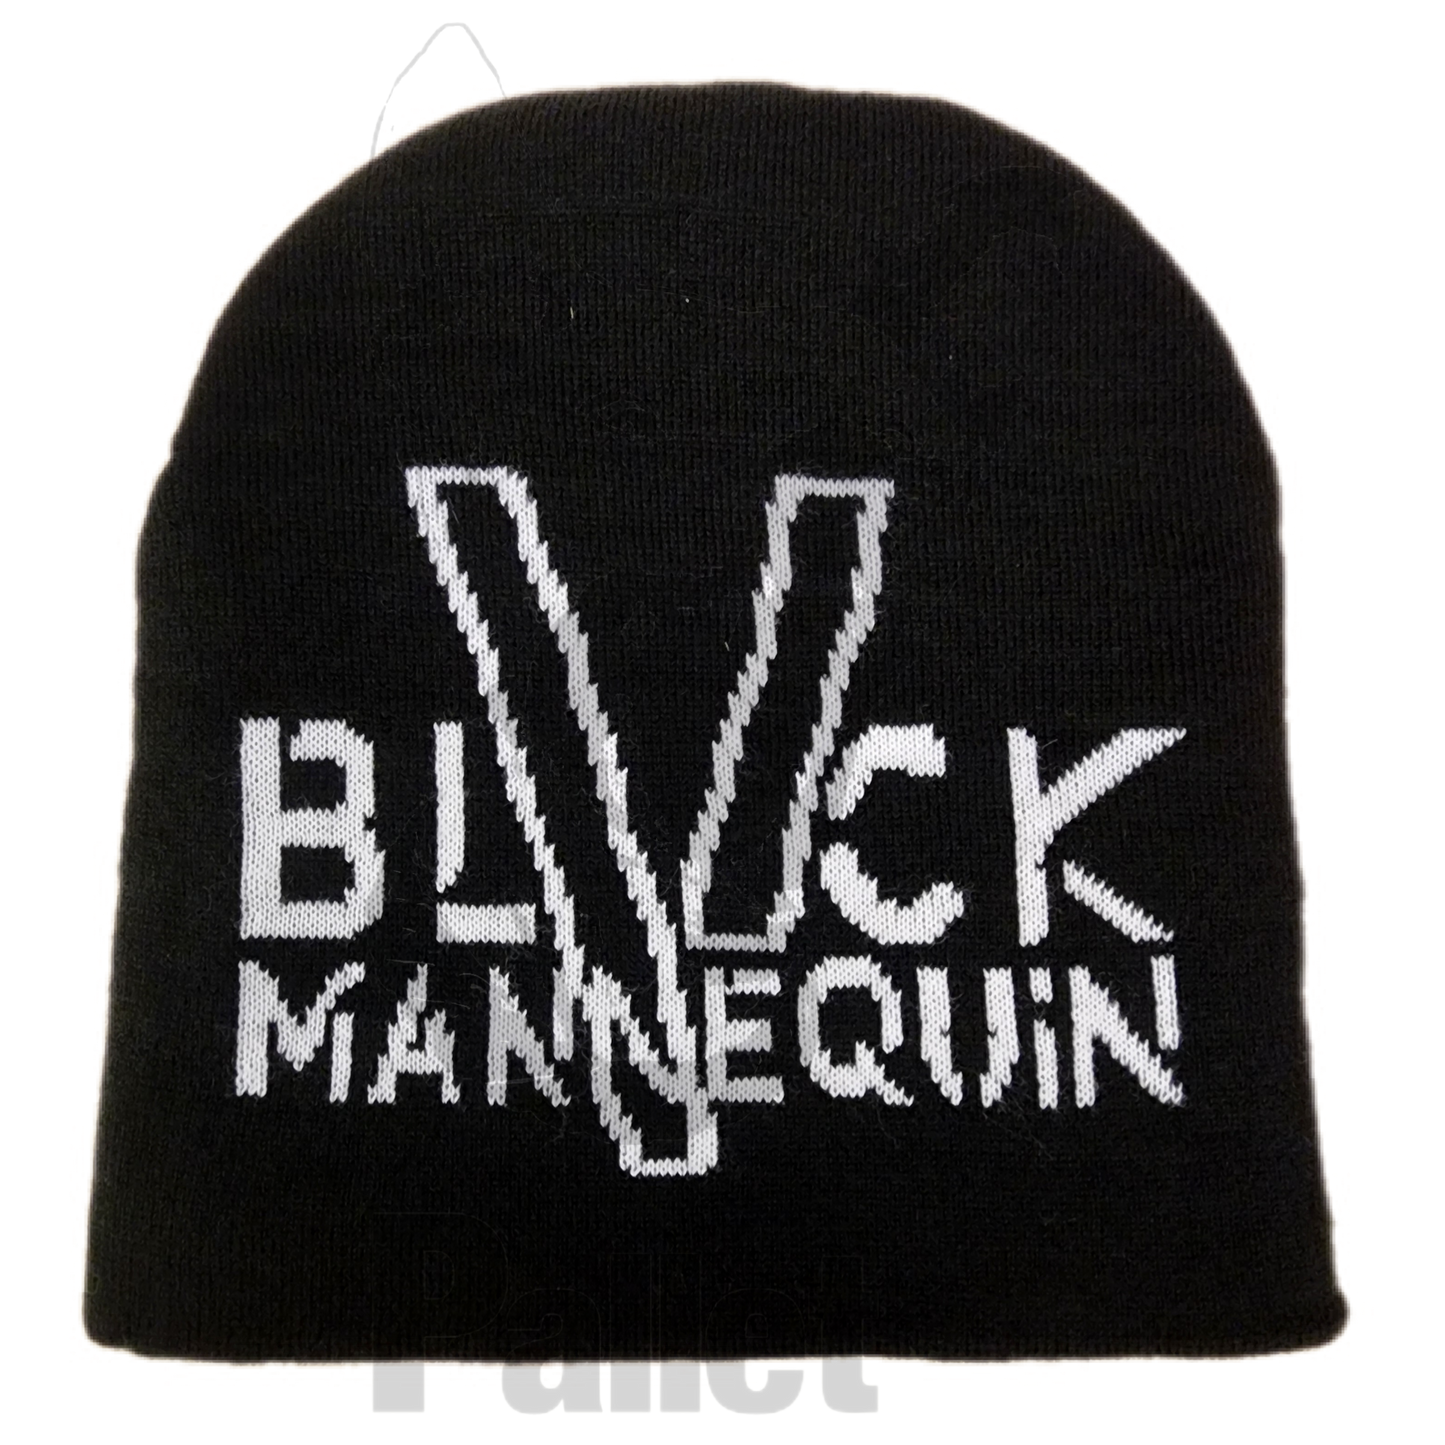 Black Mannequin - "Skully Beanie"